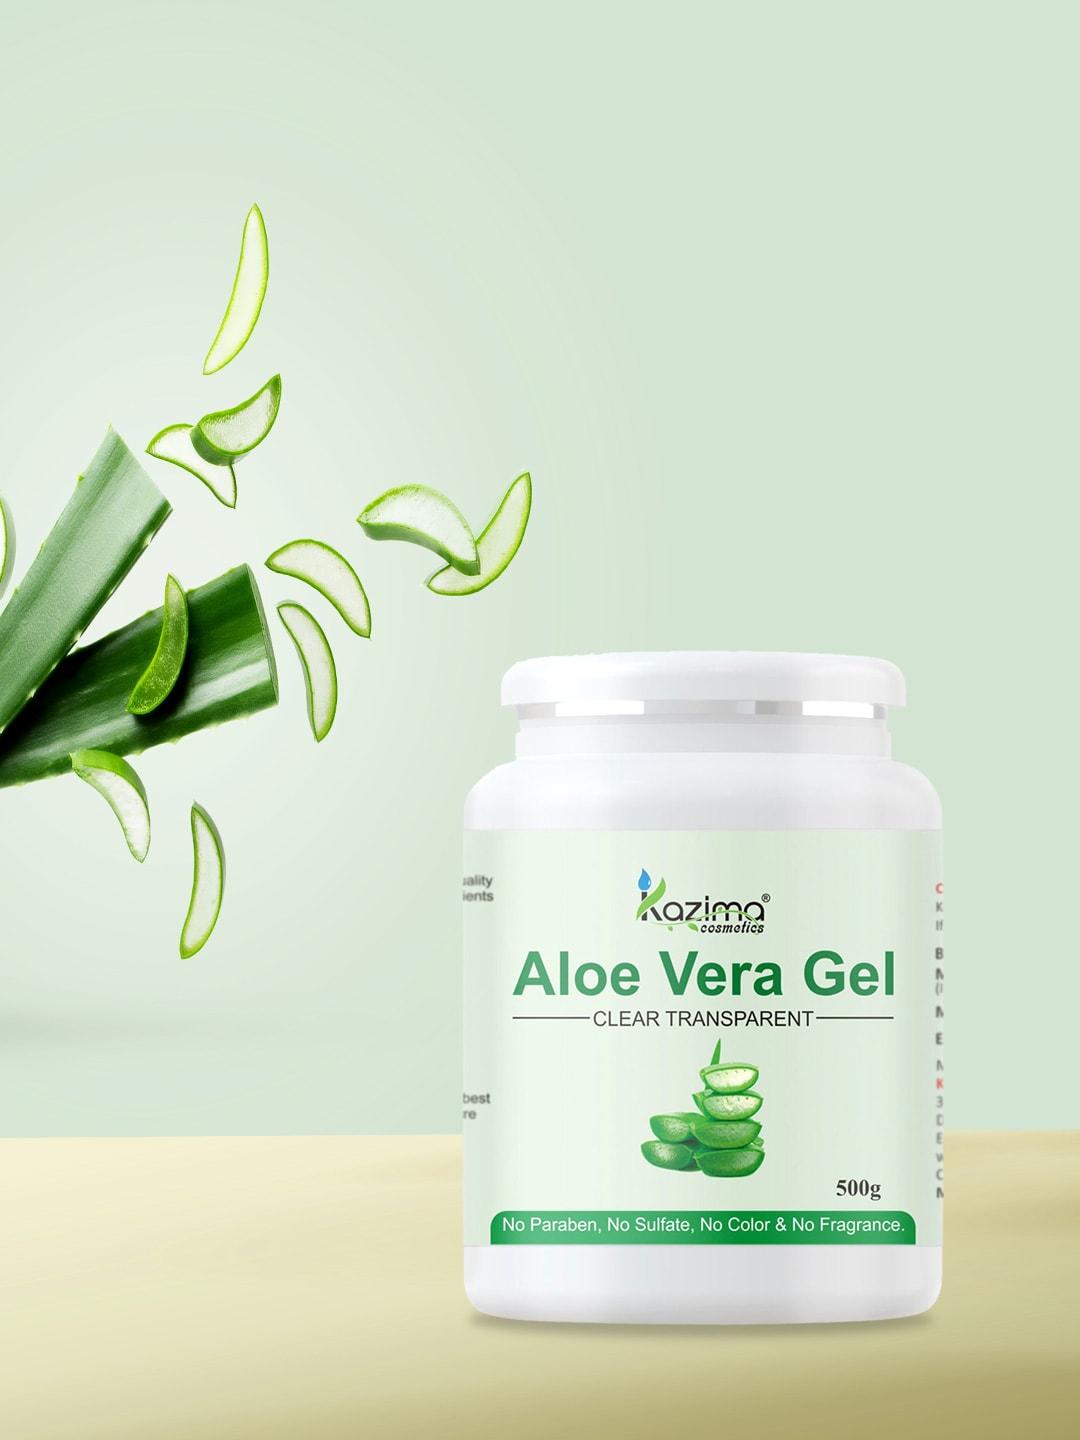 kazima aloe vera gel for skin & hair - 500g